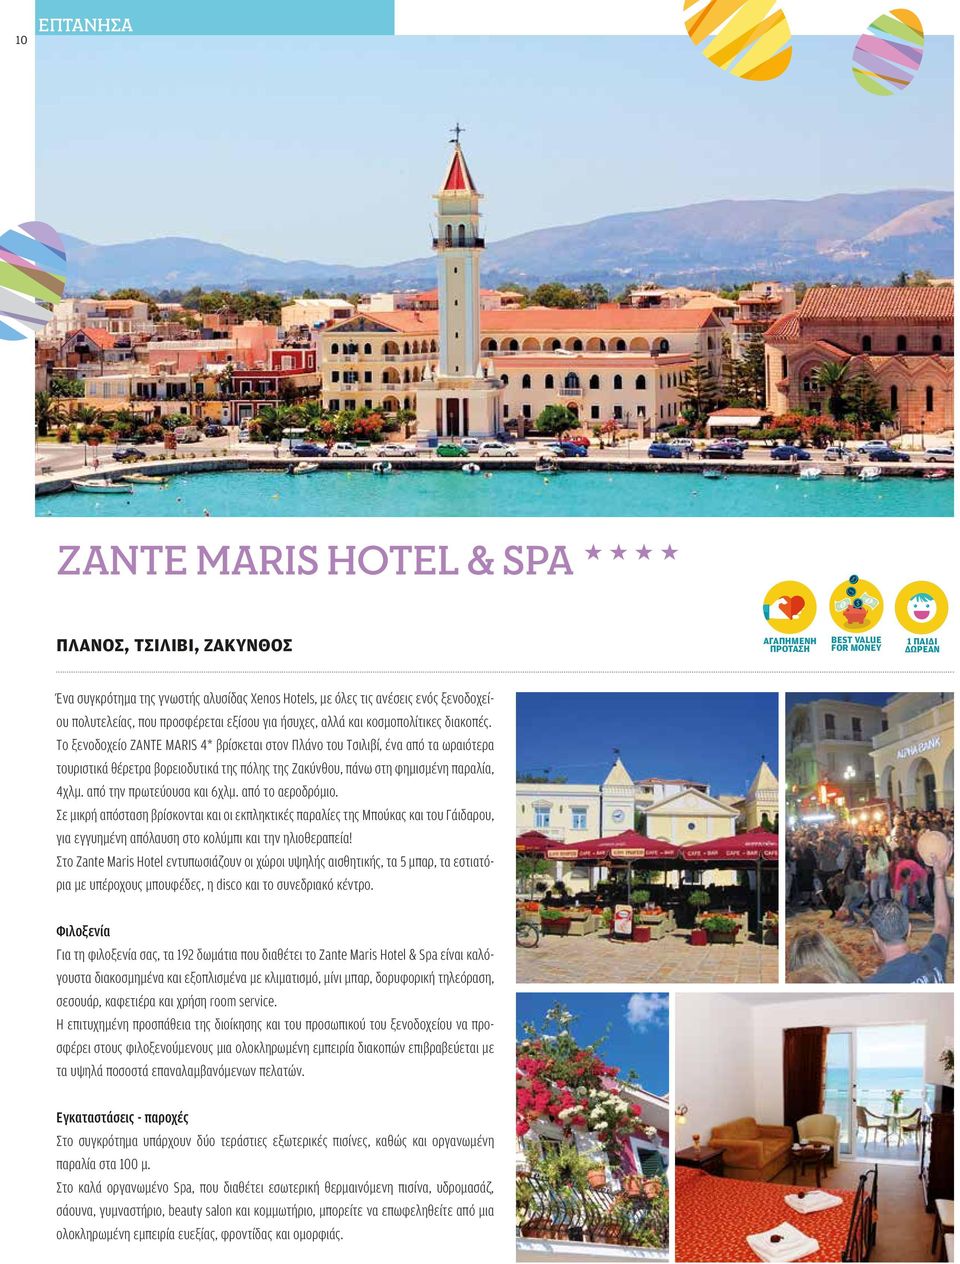 Το ξενοδοχείο Zante Maris 4* βρίσκεται στον Πλάνο του Τσιλιβί, ένα από τα ωραιότερα τουριστικά θέρετρα βορειοδυτικά της πόλης της Ζακύνθου, πάνω στη φημισμένη παραλία, 4χλμ.